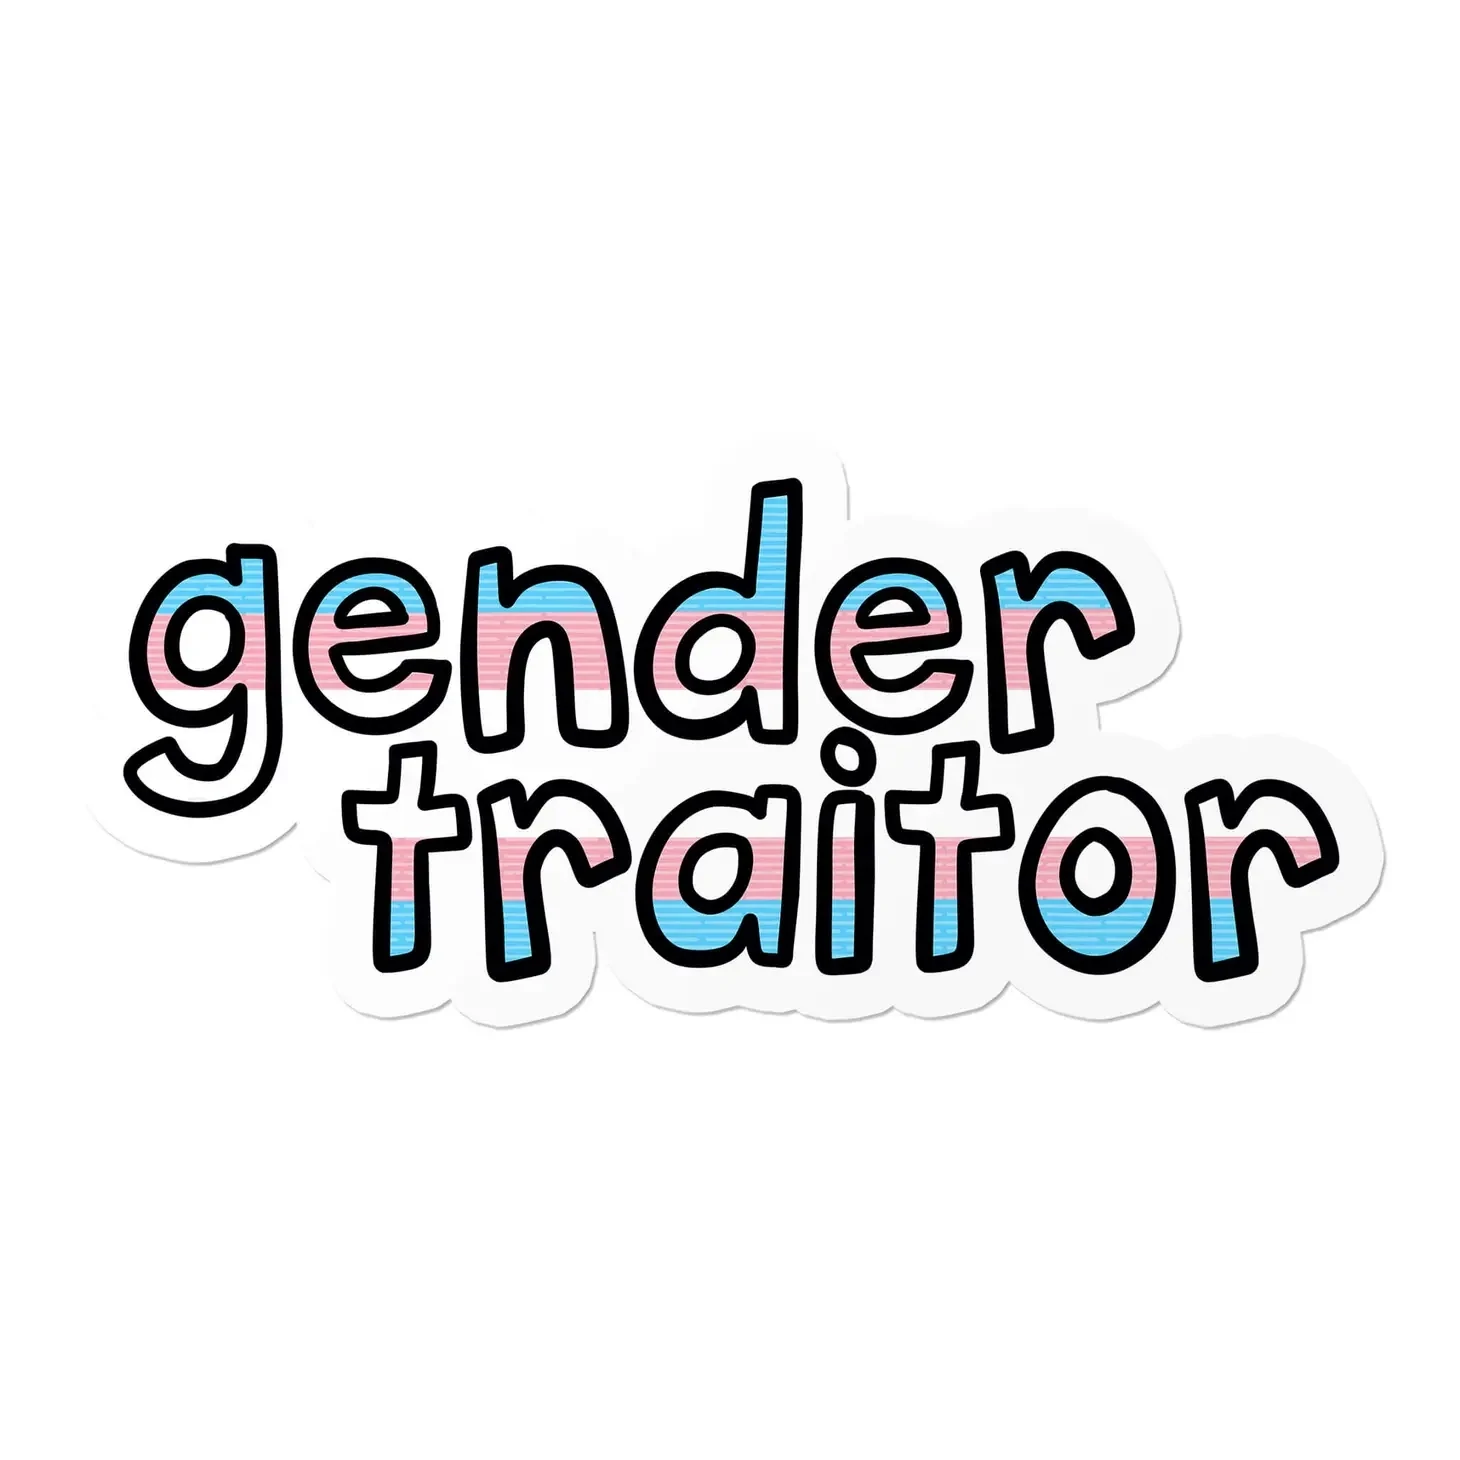 Gender Traitor Sticker